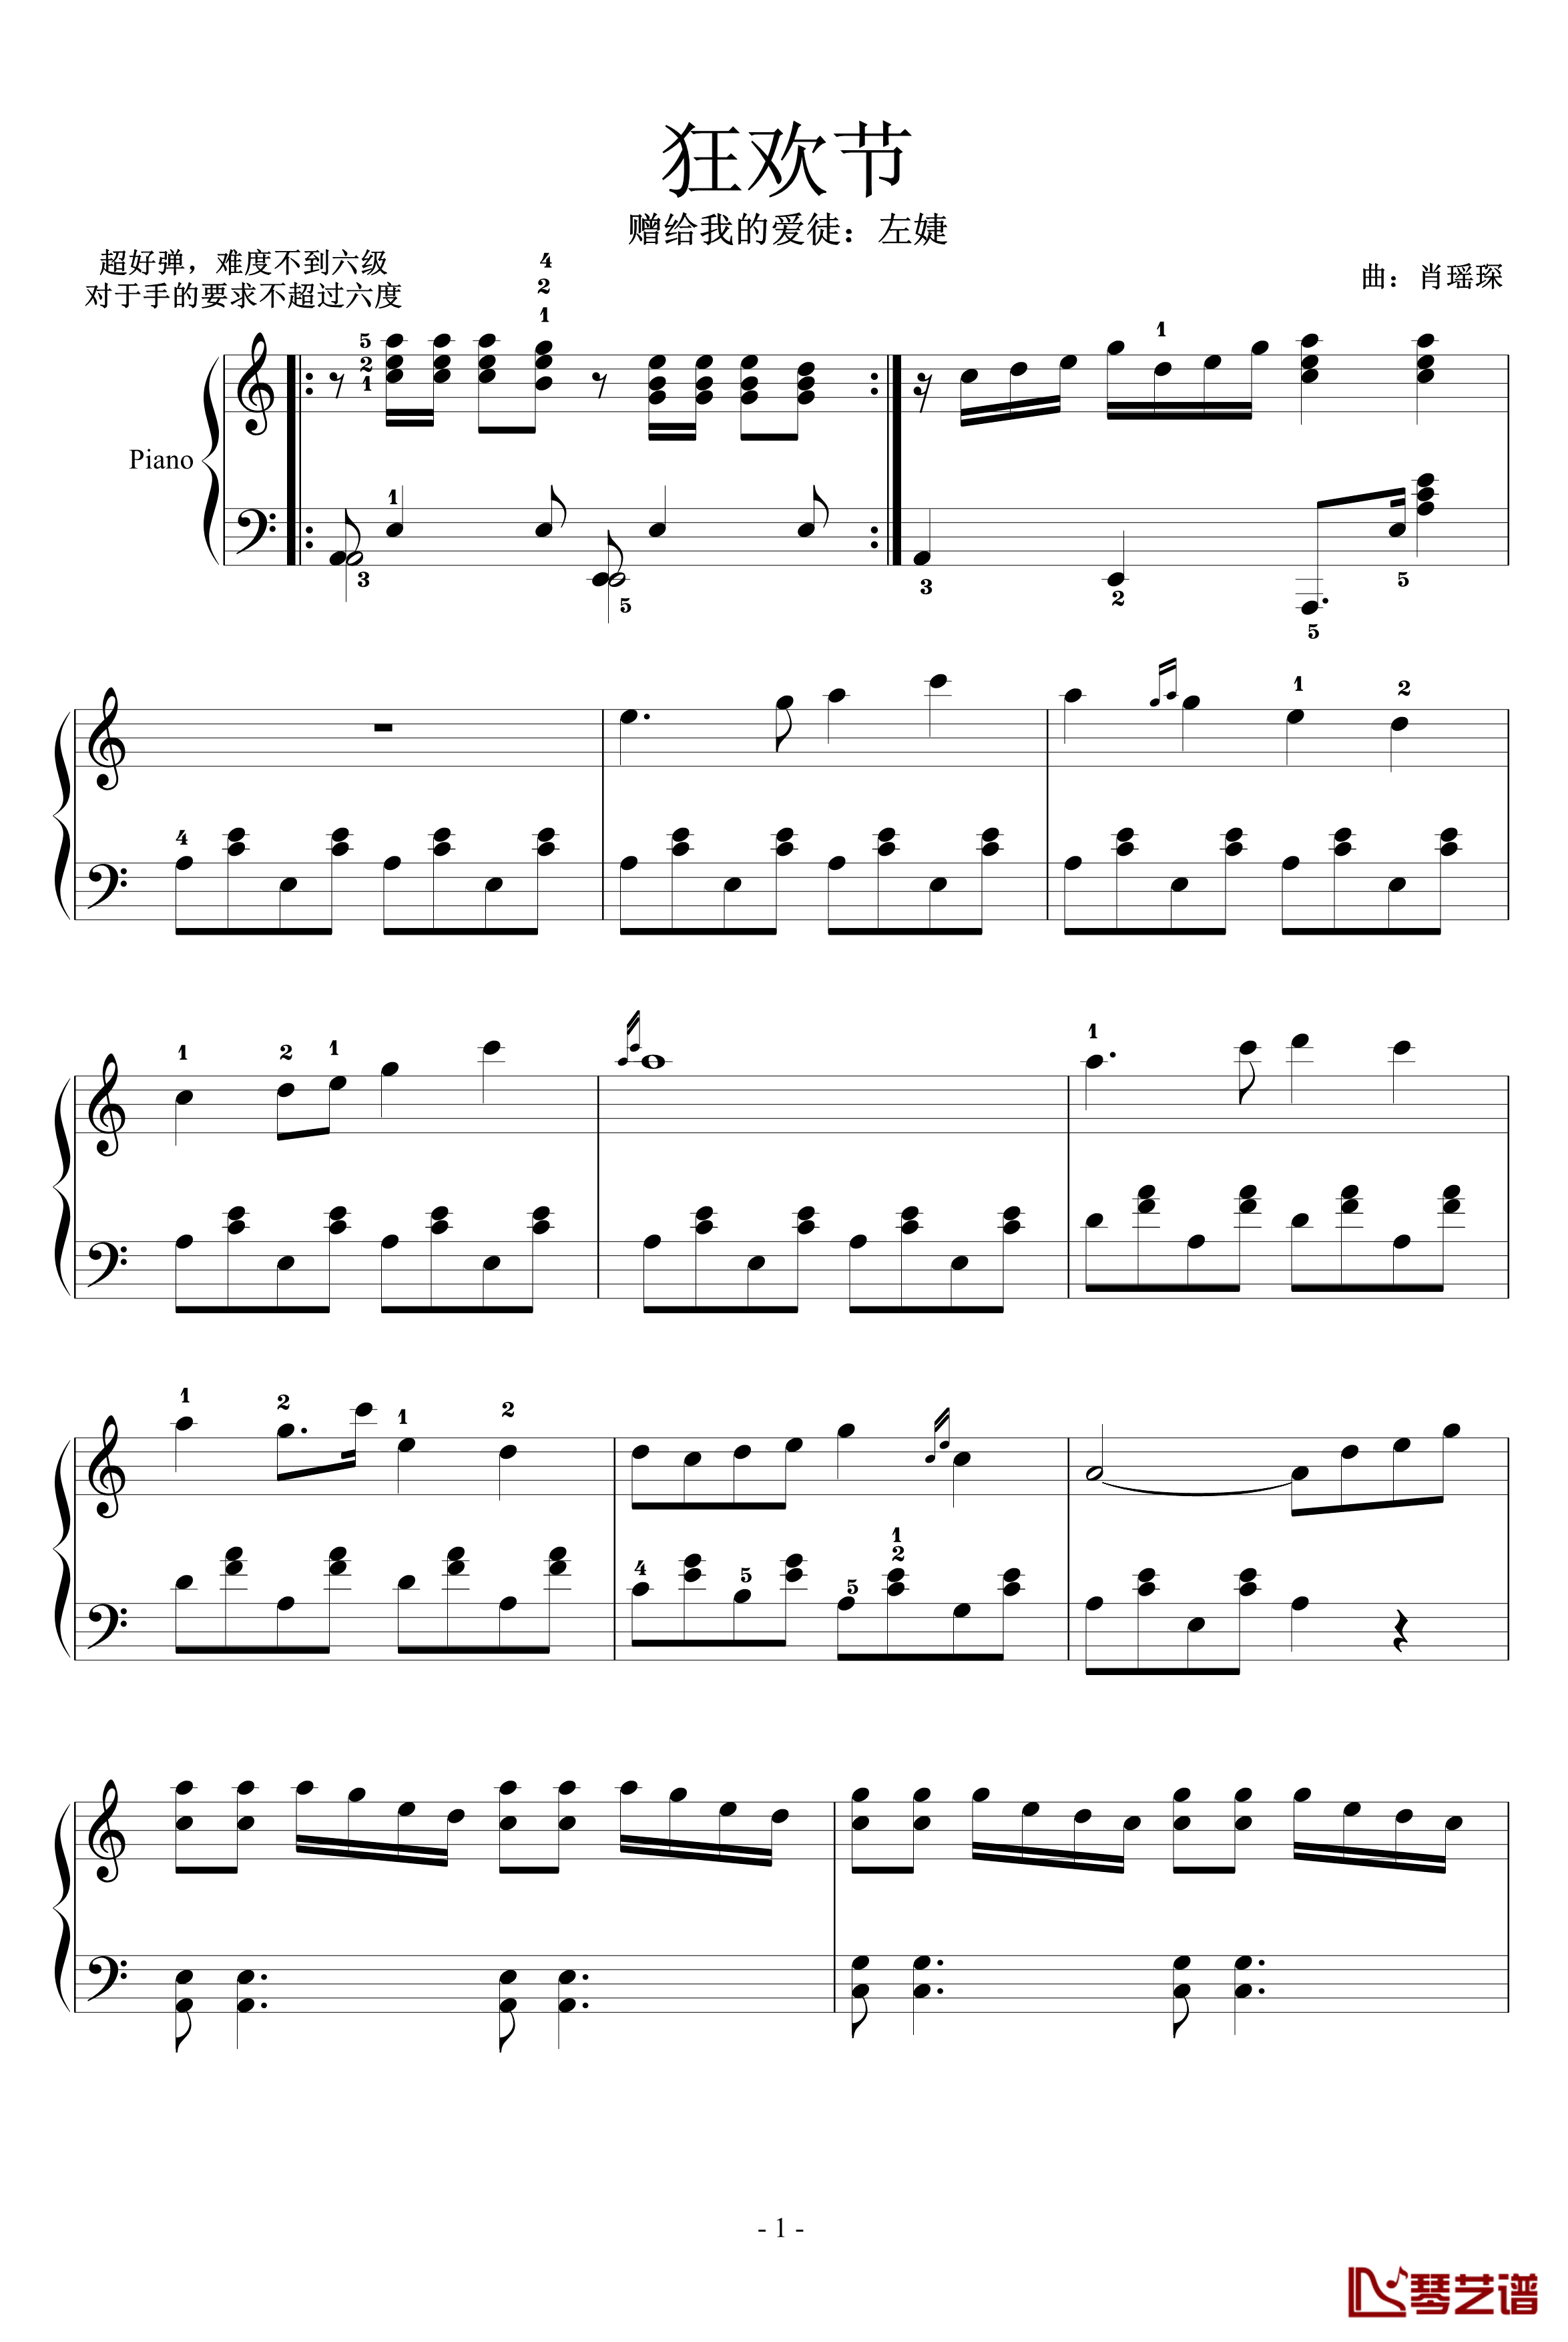 狂欢节钢琴谱-赠左婕-塞外孤笛1